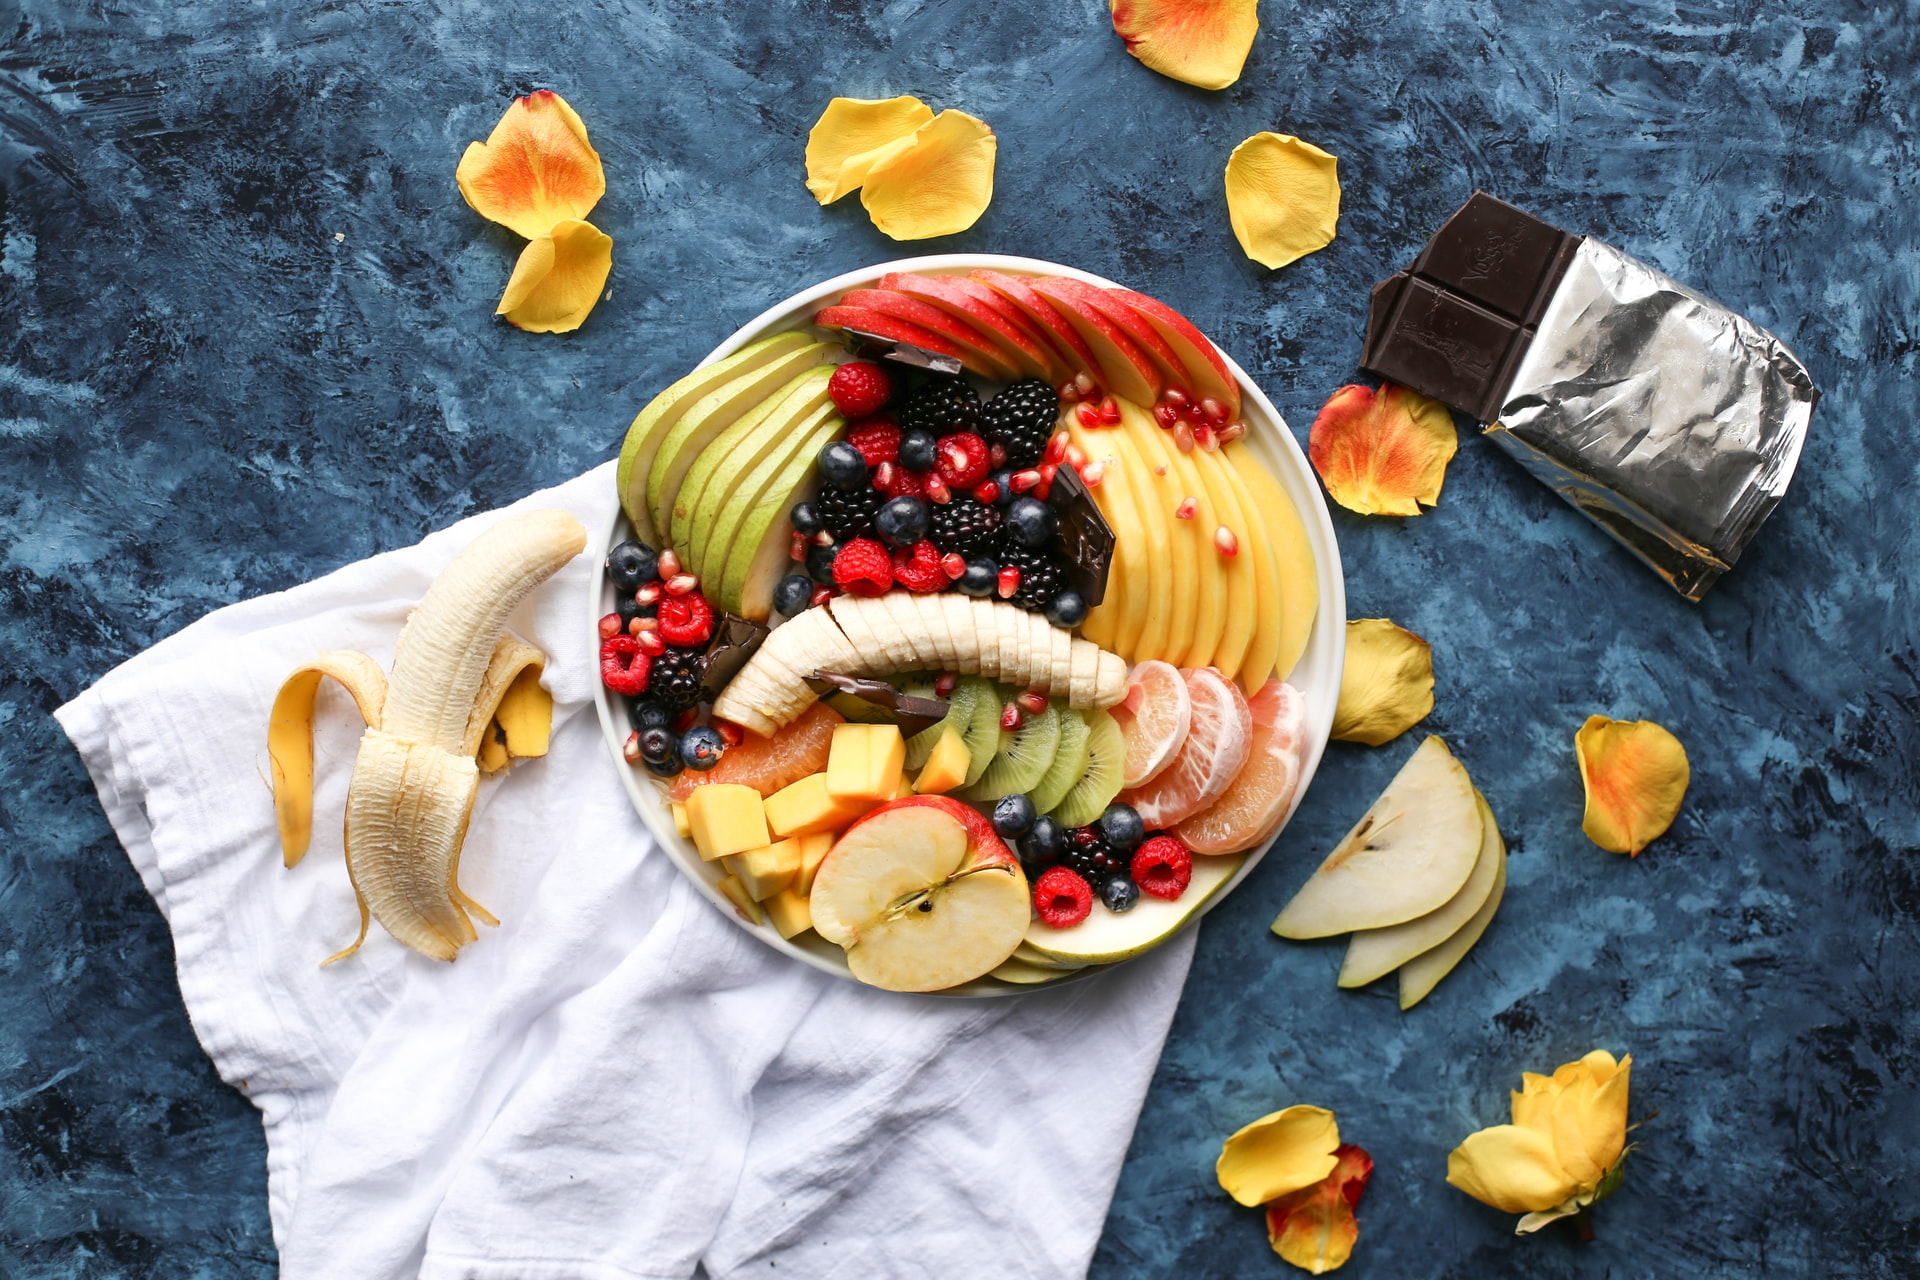 Las frutas son una rica y sana opción para incluirlas a diario en su alimentación. (Foto Prensa Libre: Brenda Godinez on Unsplash).